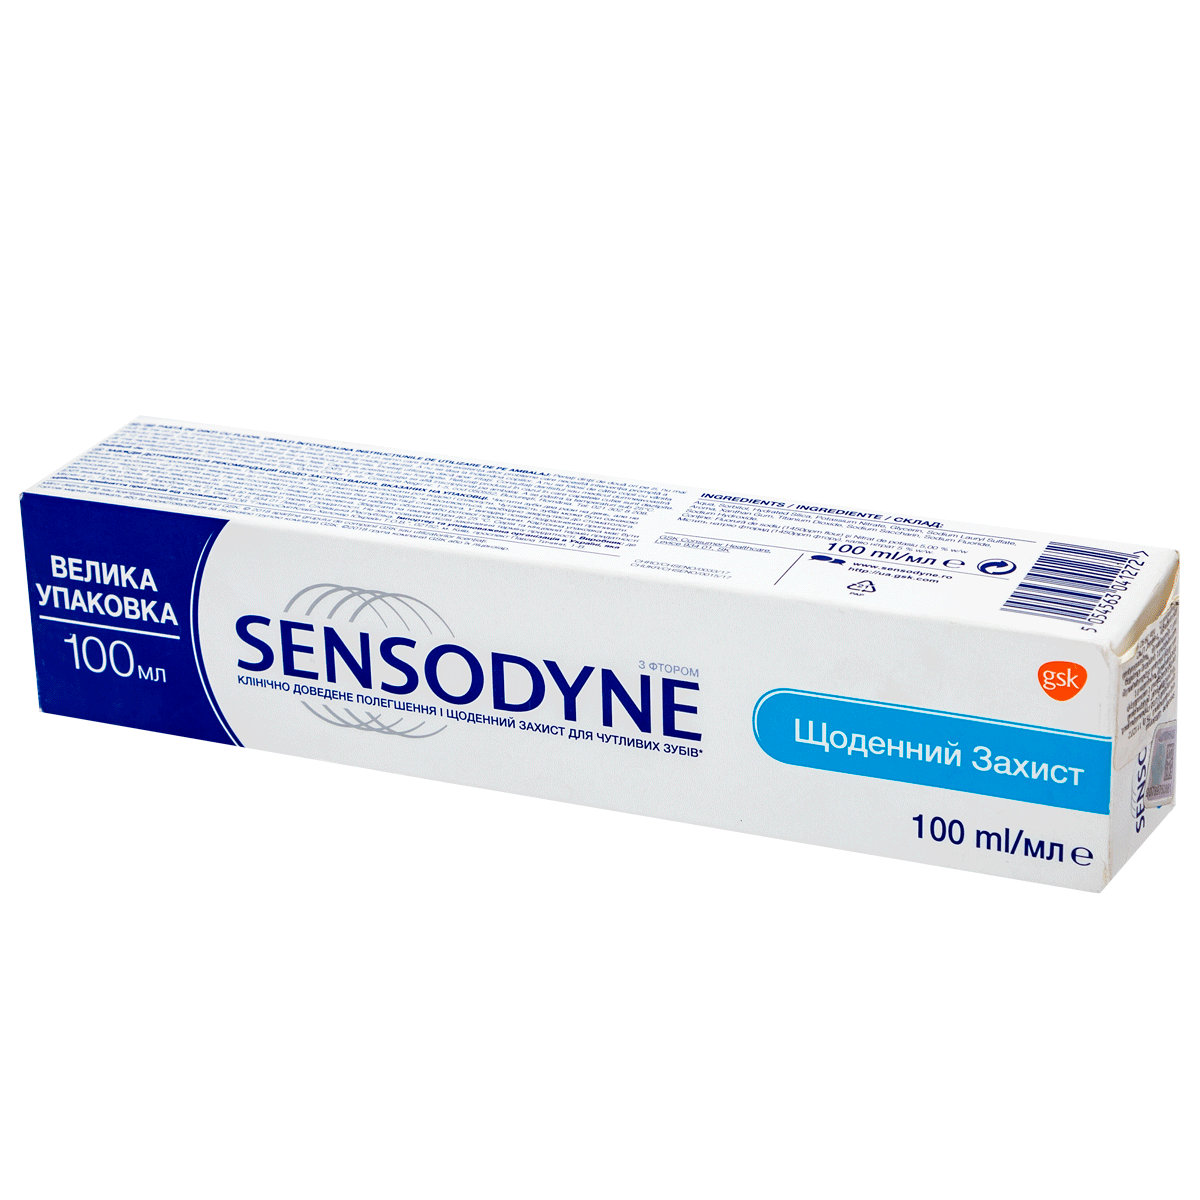 Ատամի մածուկ Sensodyne daily protection 